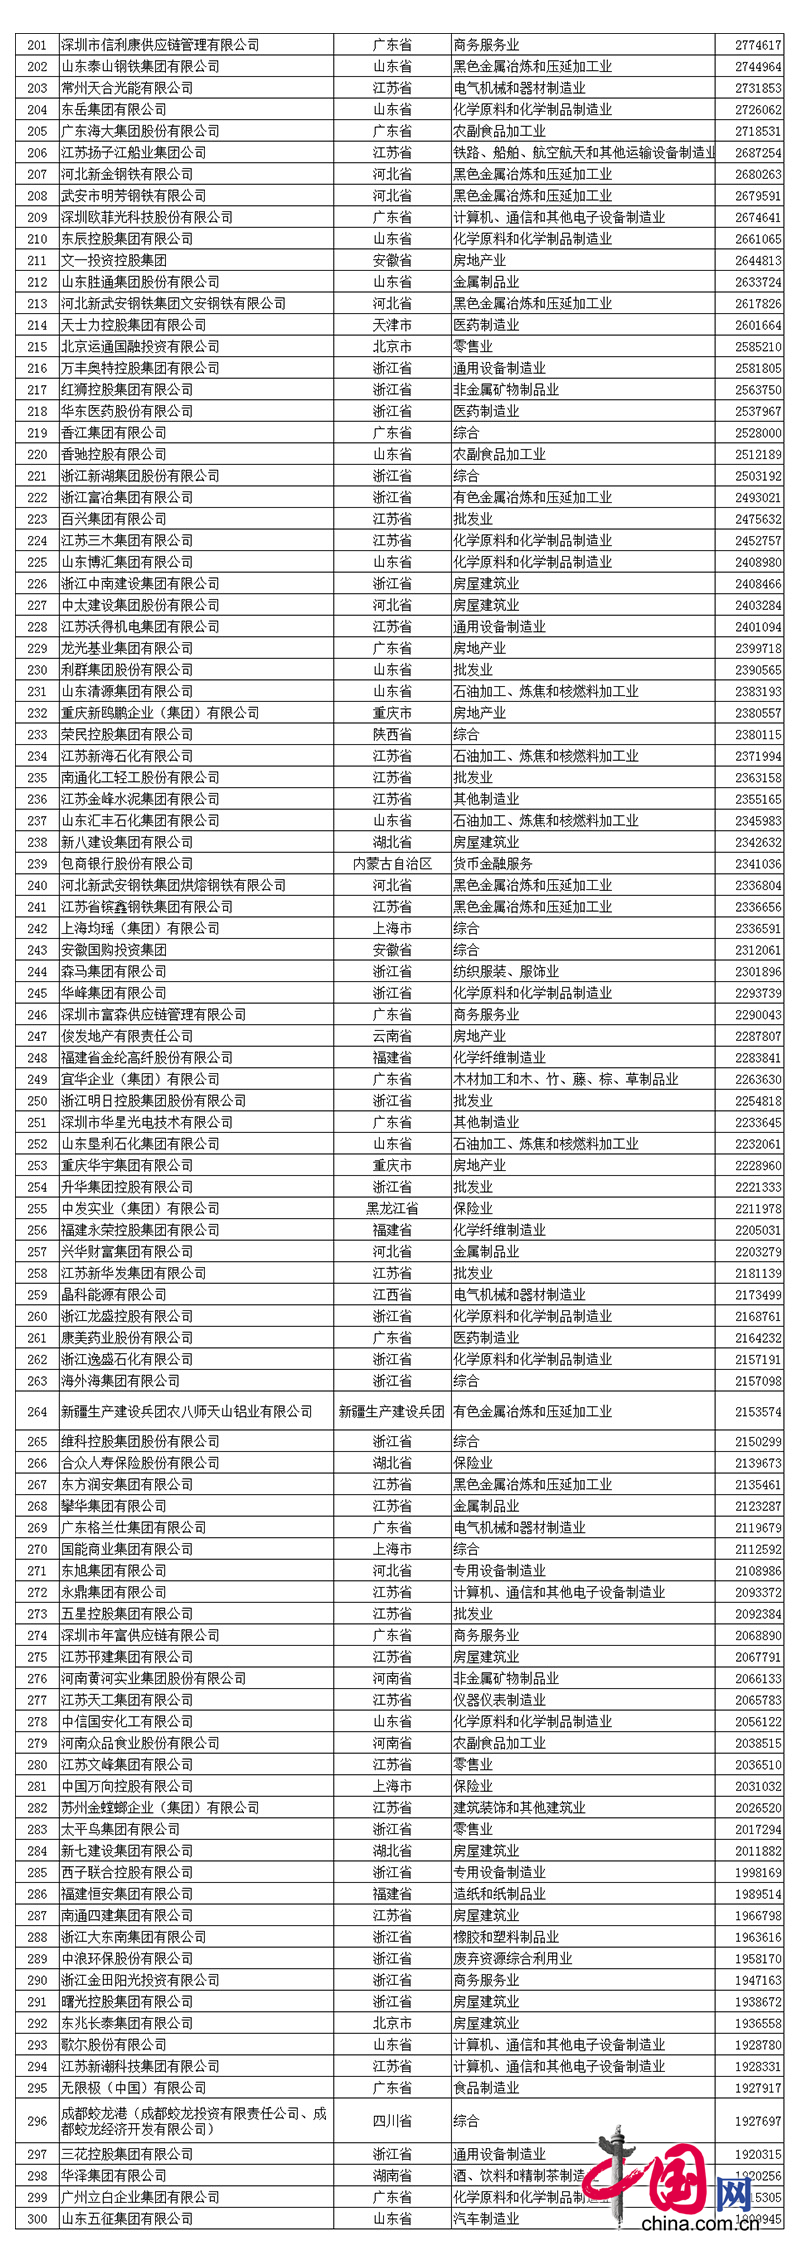 2017中国民营企业500强名单中程力排名第390名